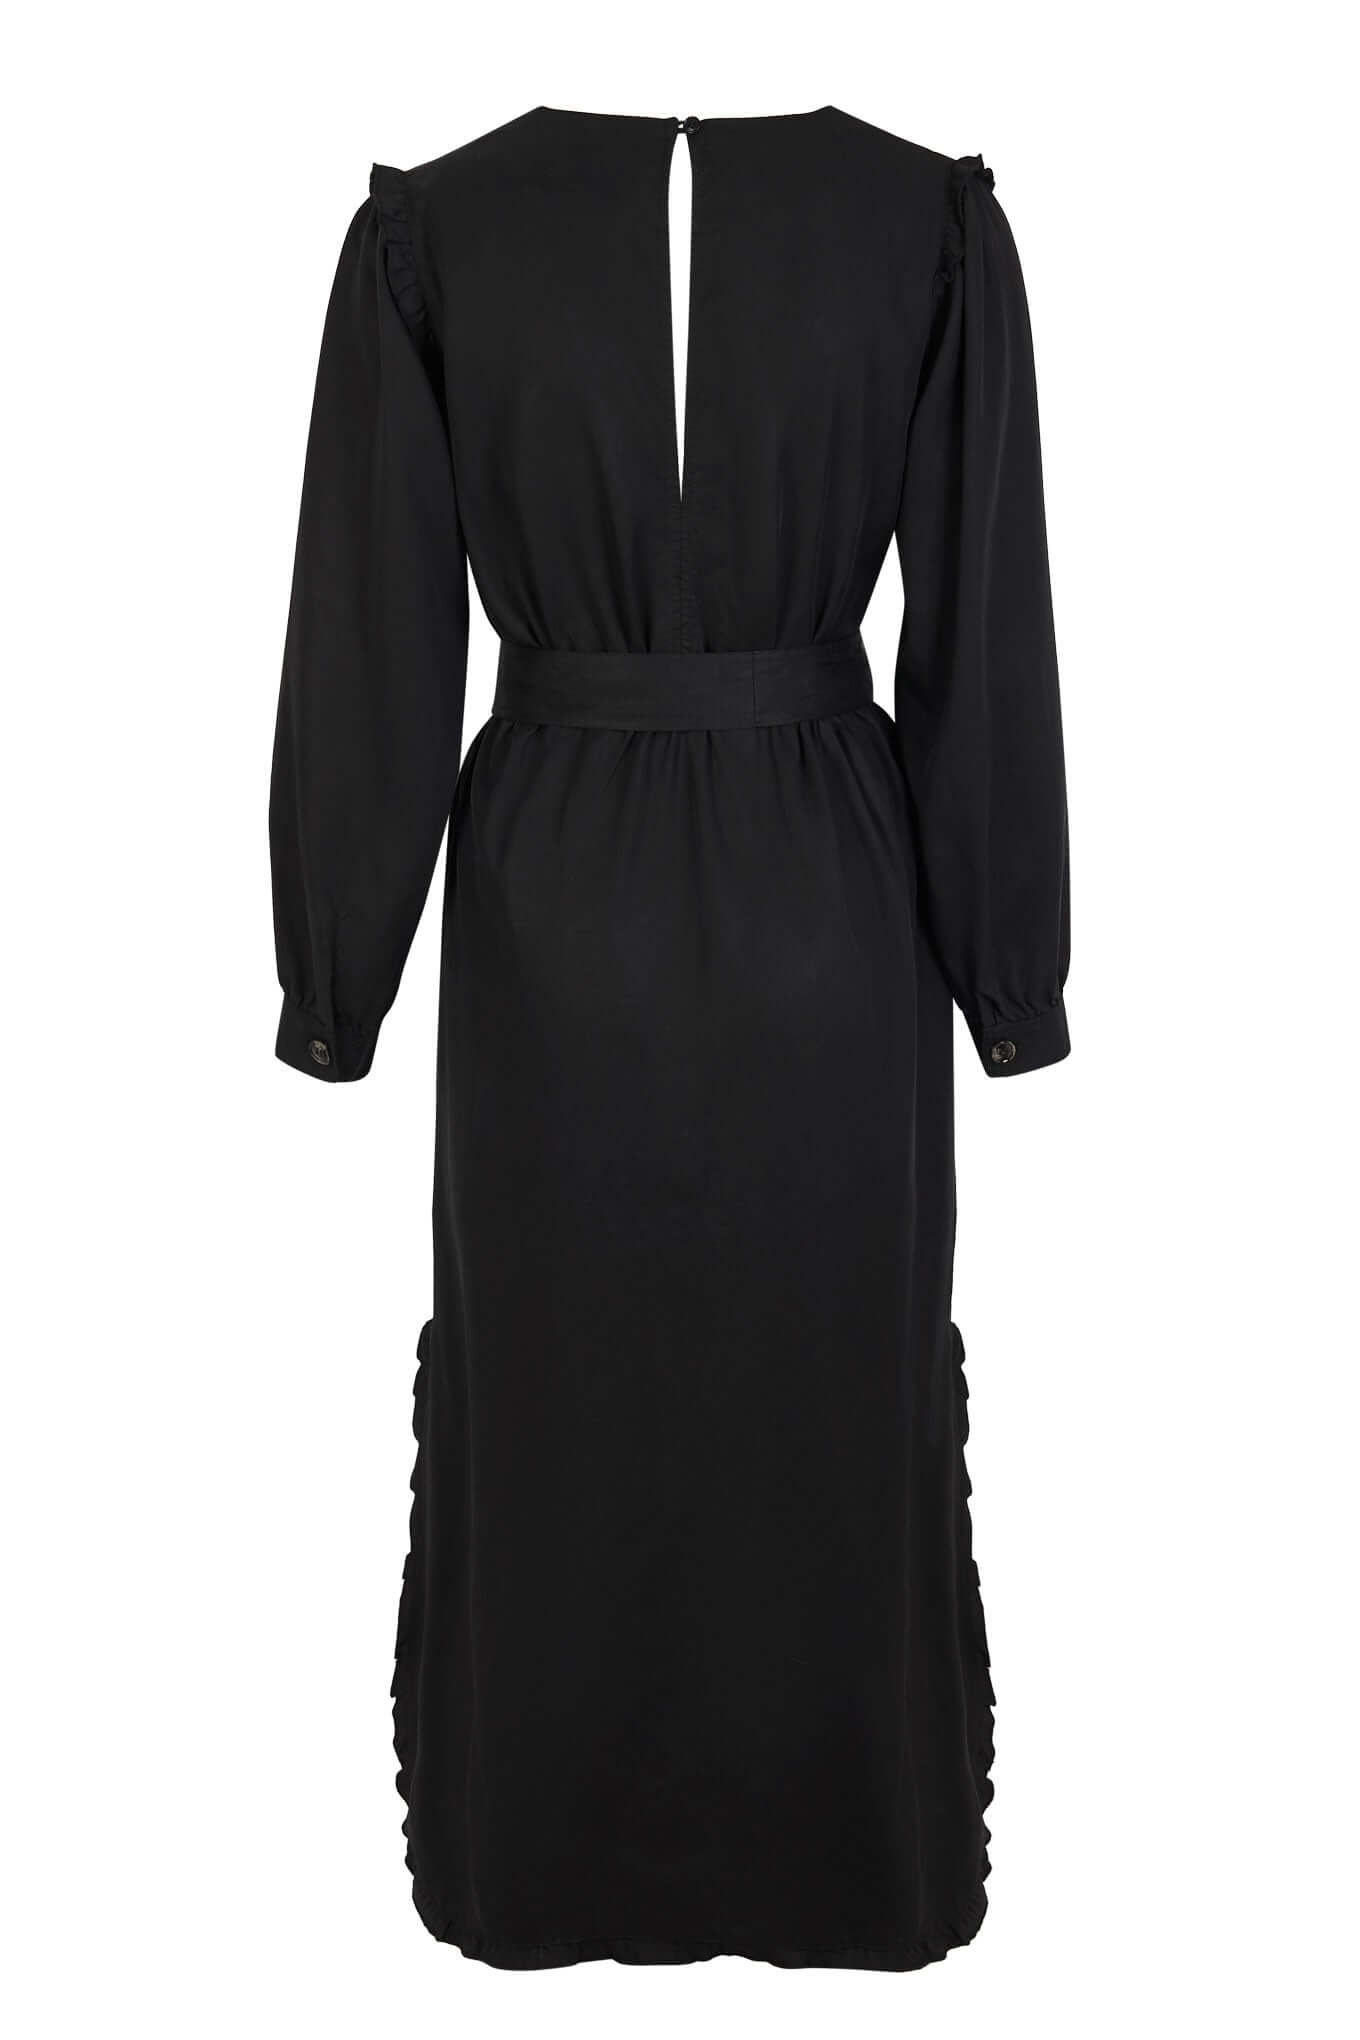 Schwarzes Kleid ALINA aus 100% Tencel von Komodo